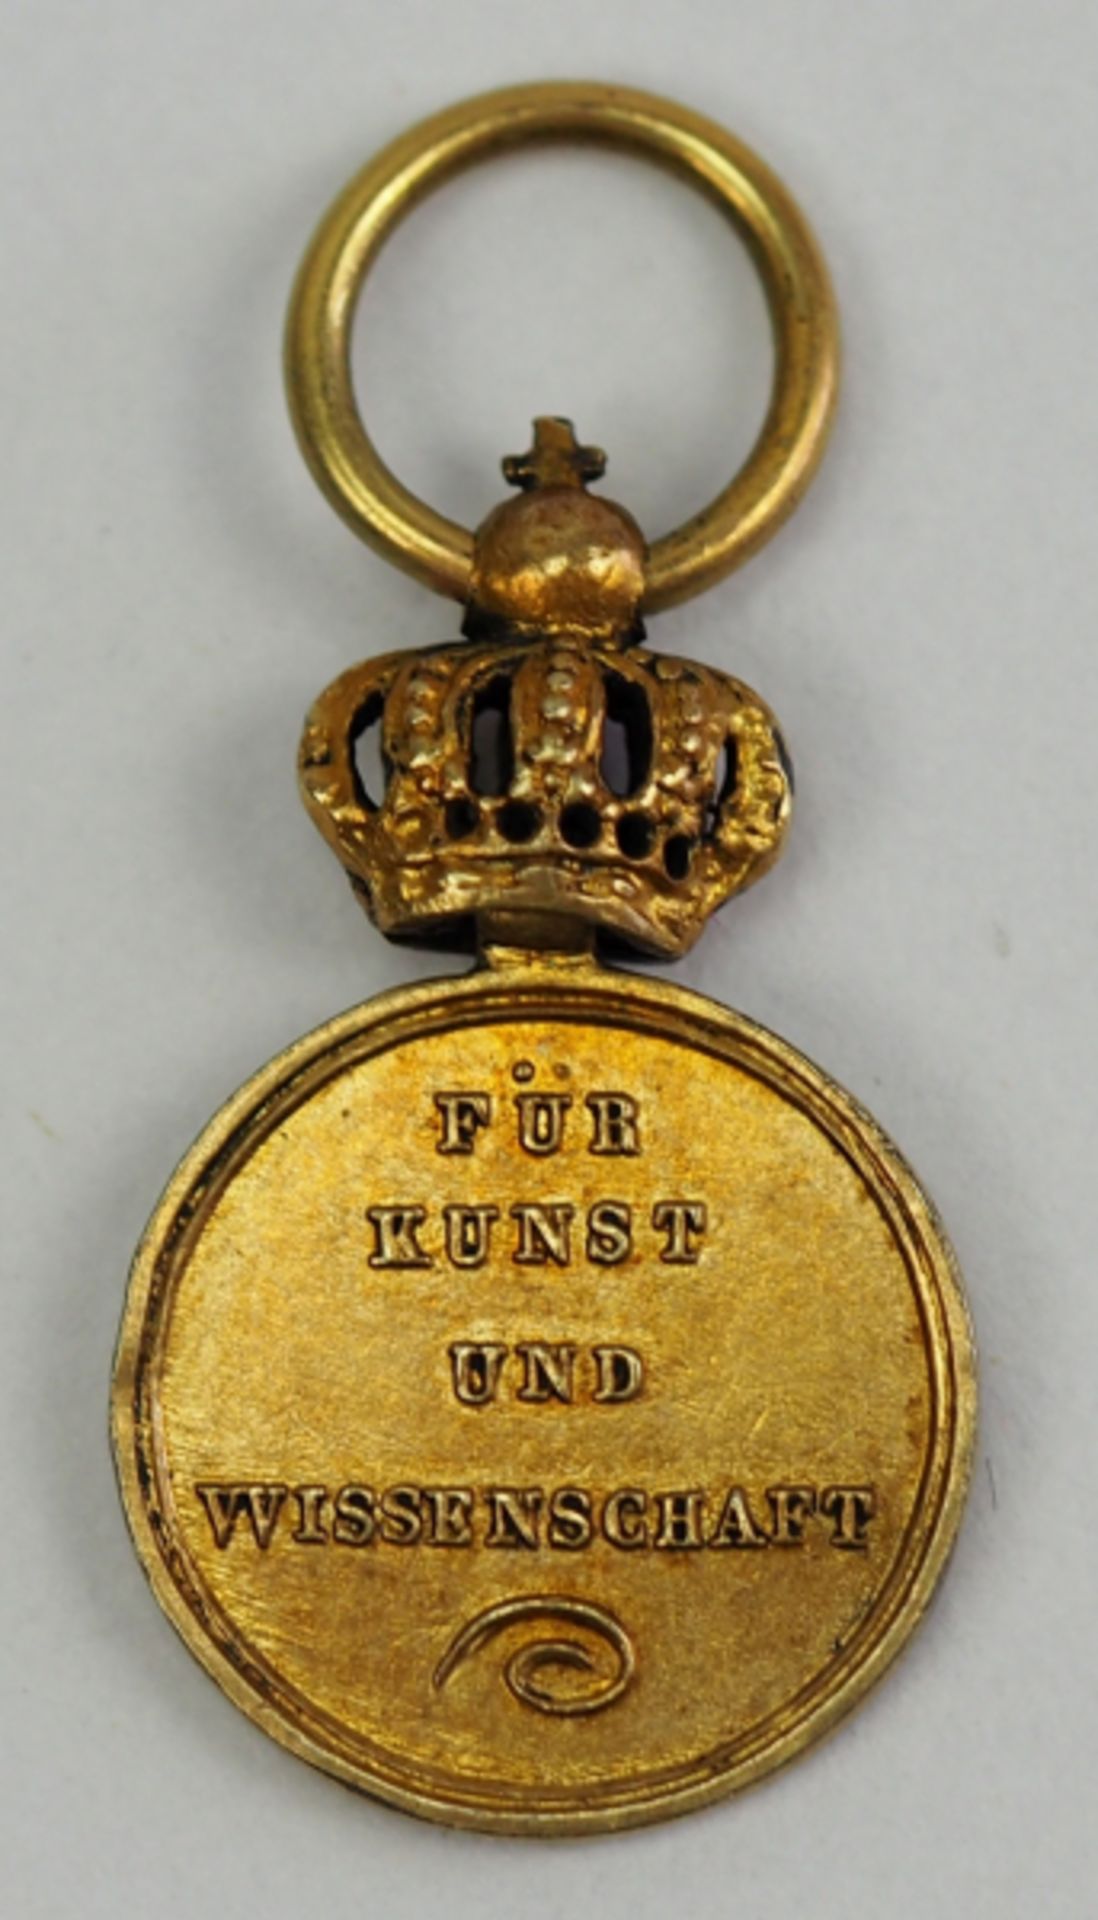 Hannover: Goldene Ehren-Medaille für Kunst und Wissenschaft, (1843-1846), Miniatur.Gold, die - Image 5 of 5